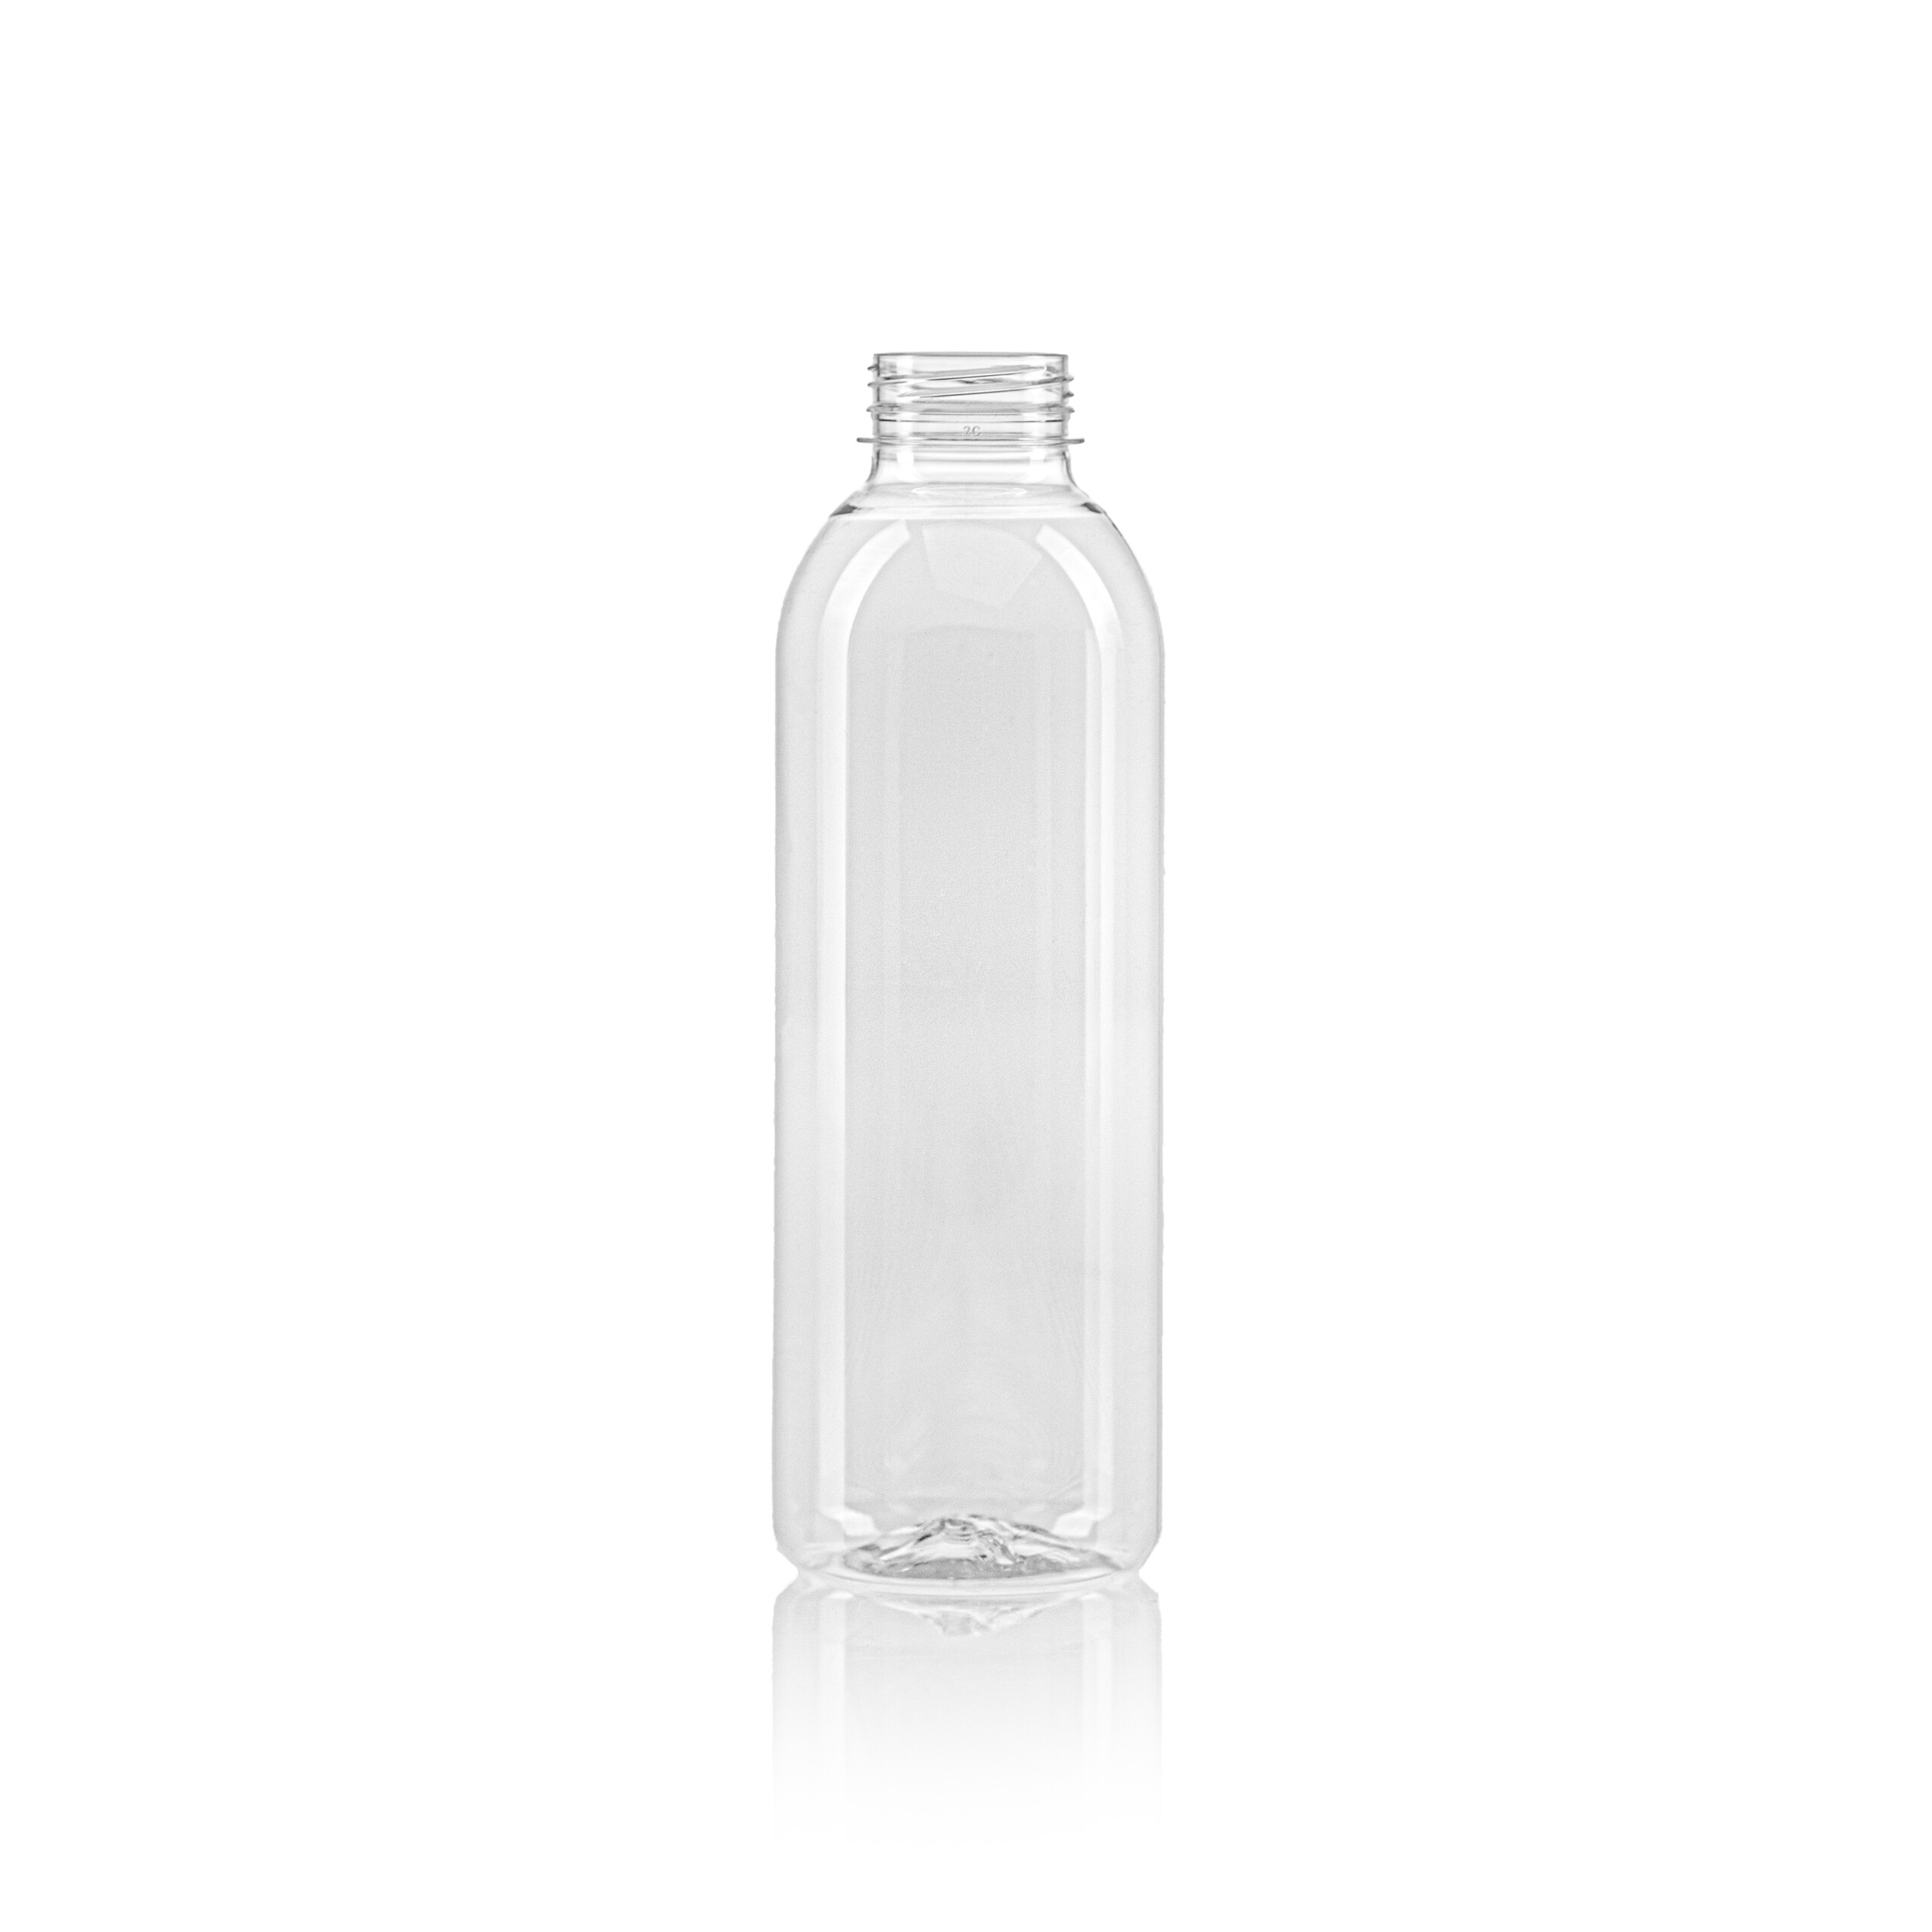 PET juice bottle round 750ml scaled